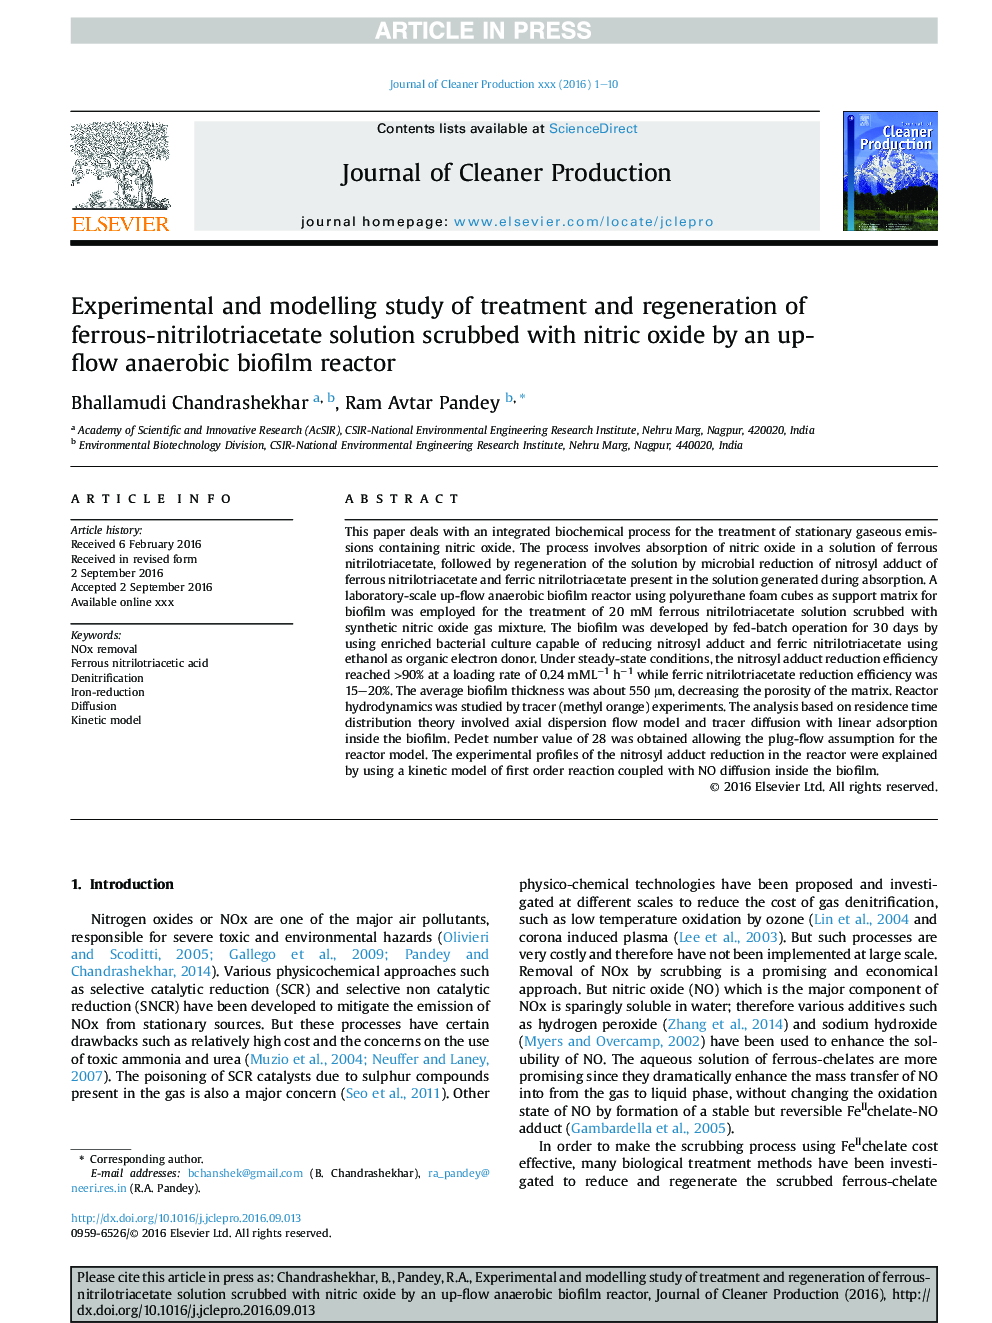 مطالعه تجربی و مدلسازی درمان و بازسازی محلول آروماتیک نیترویلوتریاساتات با استفاده از راکتور بیوفیلم بی هوازی بی هوازی با اکسیژن نیتریک 